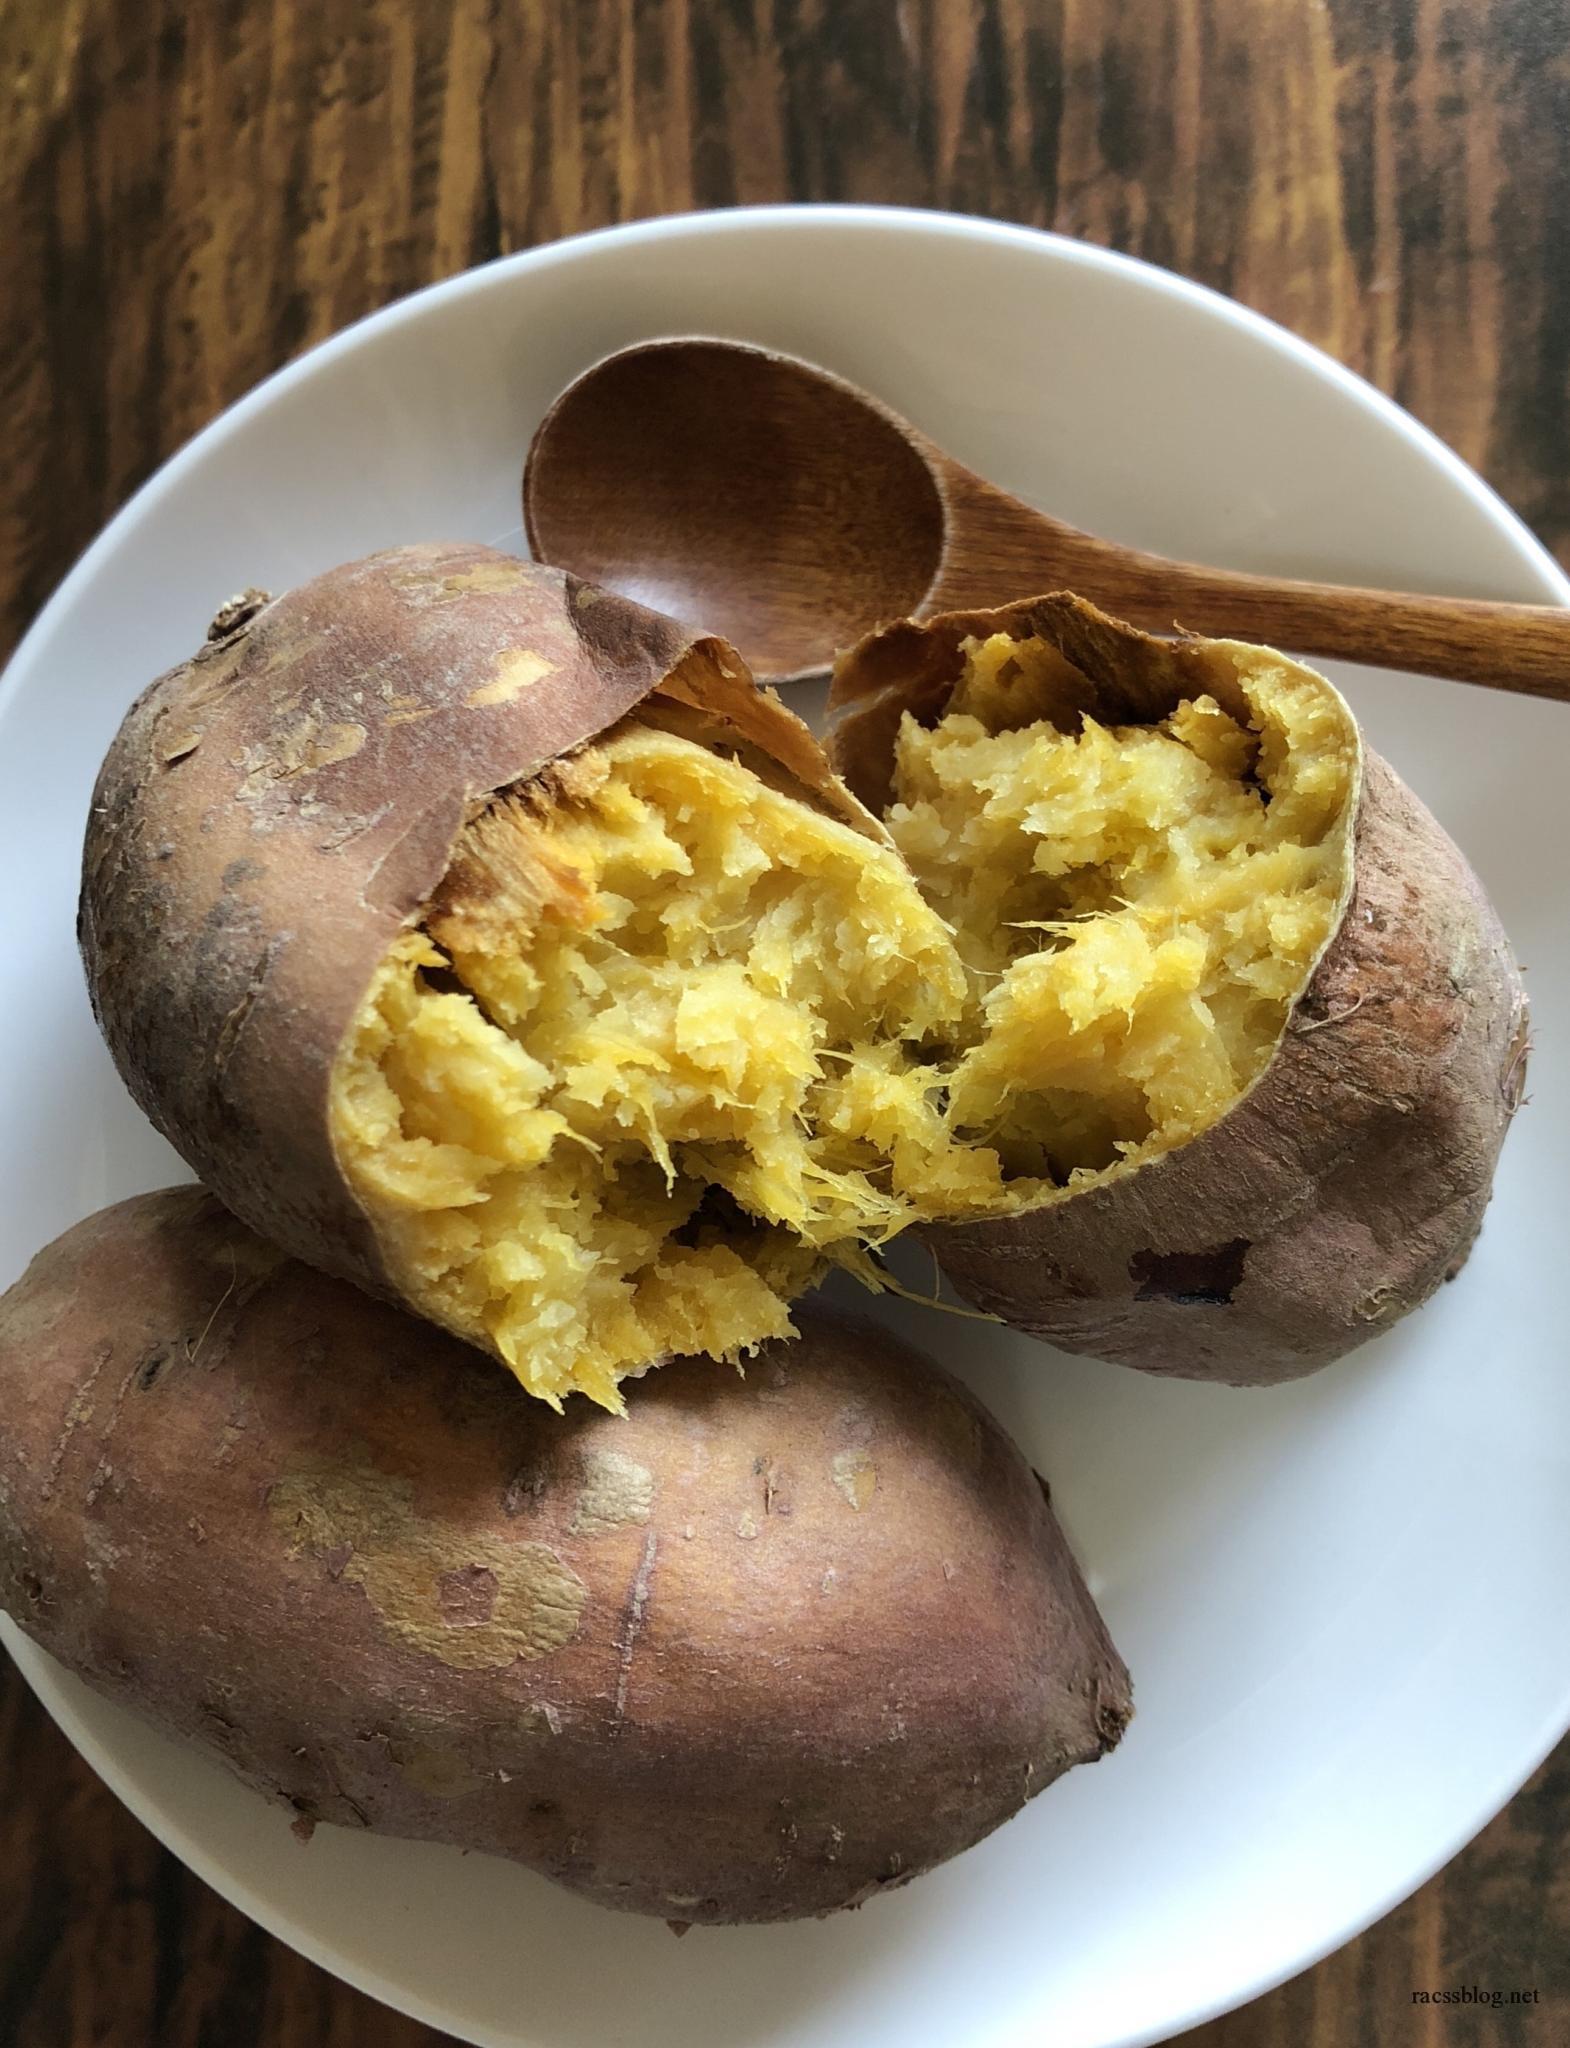 安納芋のオーブン焼き芋の焼き方とストーブ焼き芋の作り方 さらに甘くするために冷凍してみた Racssblog